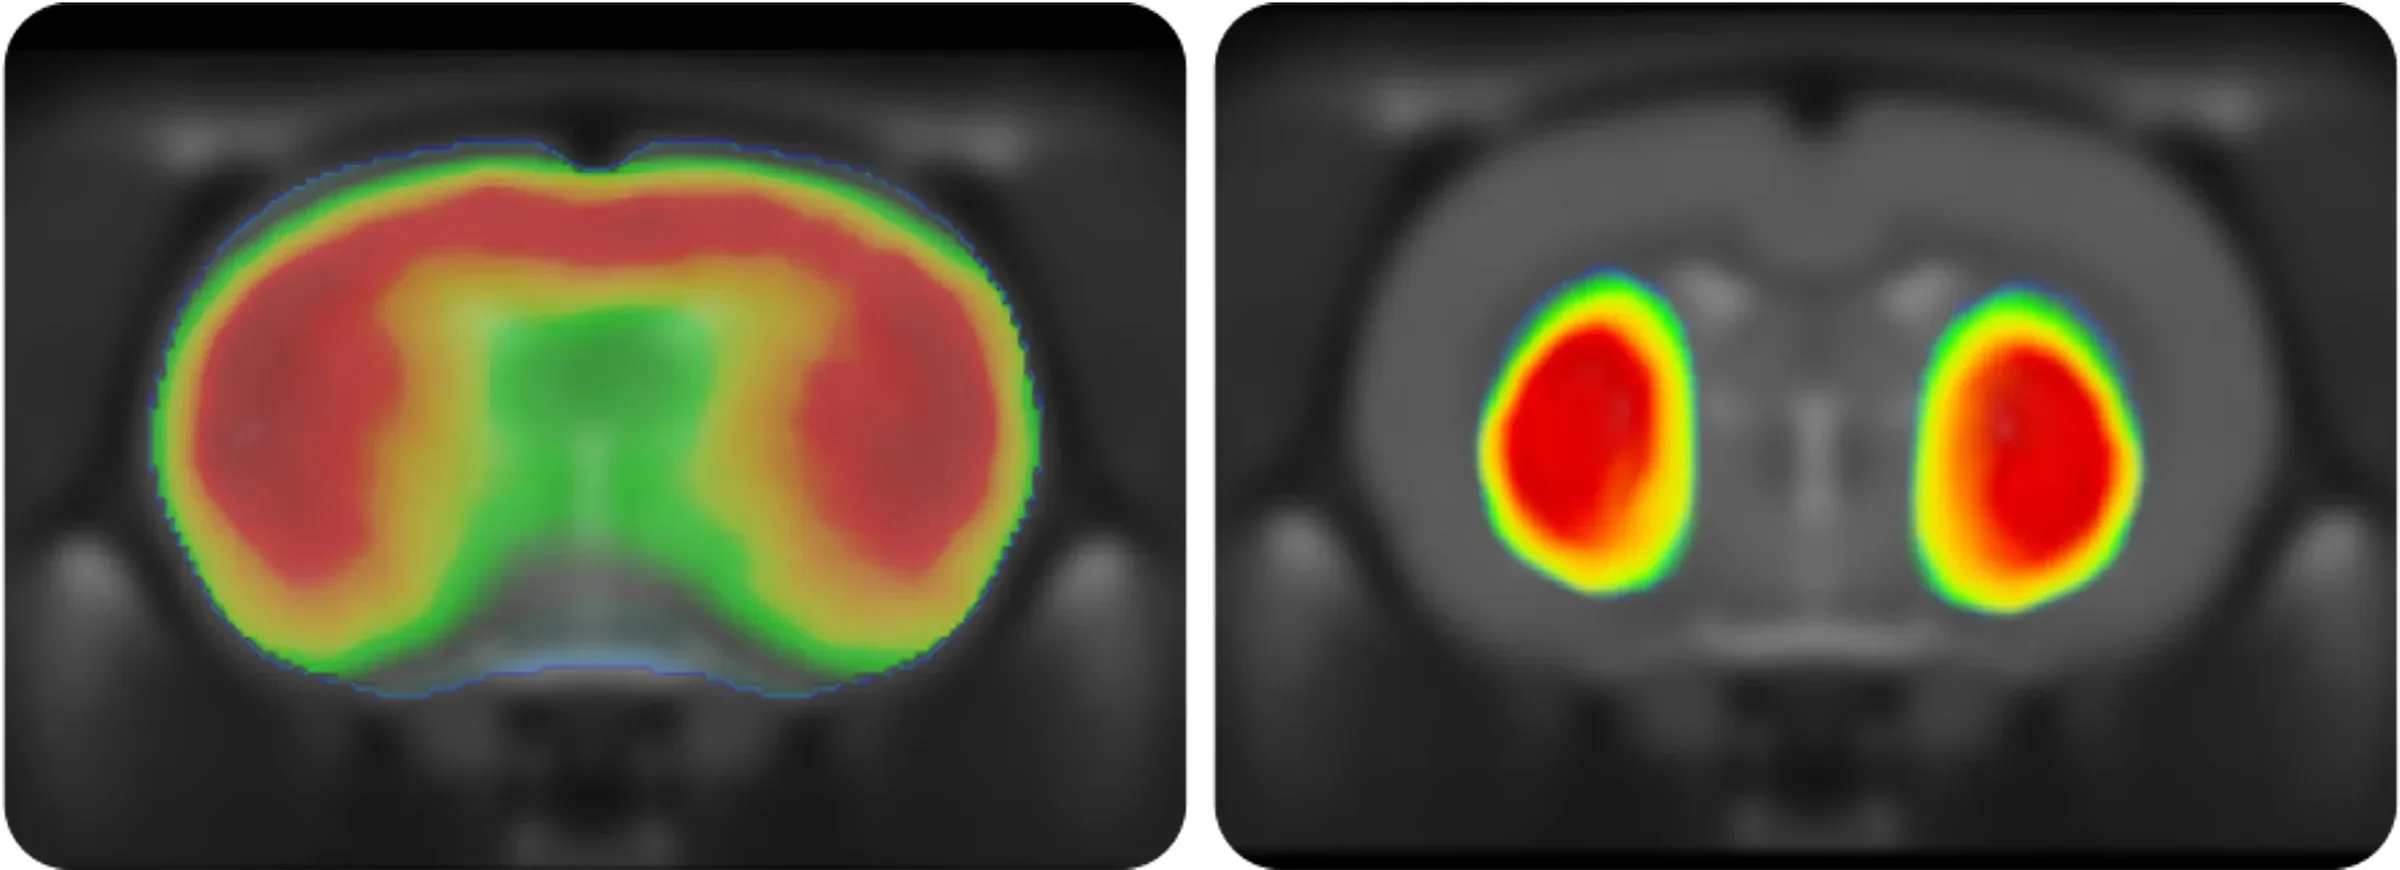 Deux petits panneaux carrés représentant chacun ce qui semble être une tomographie par émission de positrons (TEP), un type d'examen d'imagerie qui aide à révéler le fonctionnement des tissus et des organes.